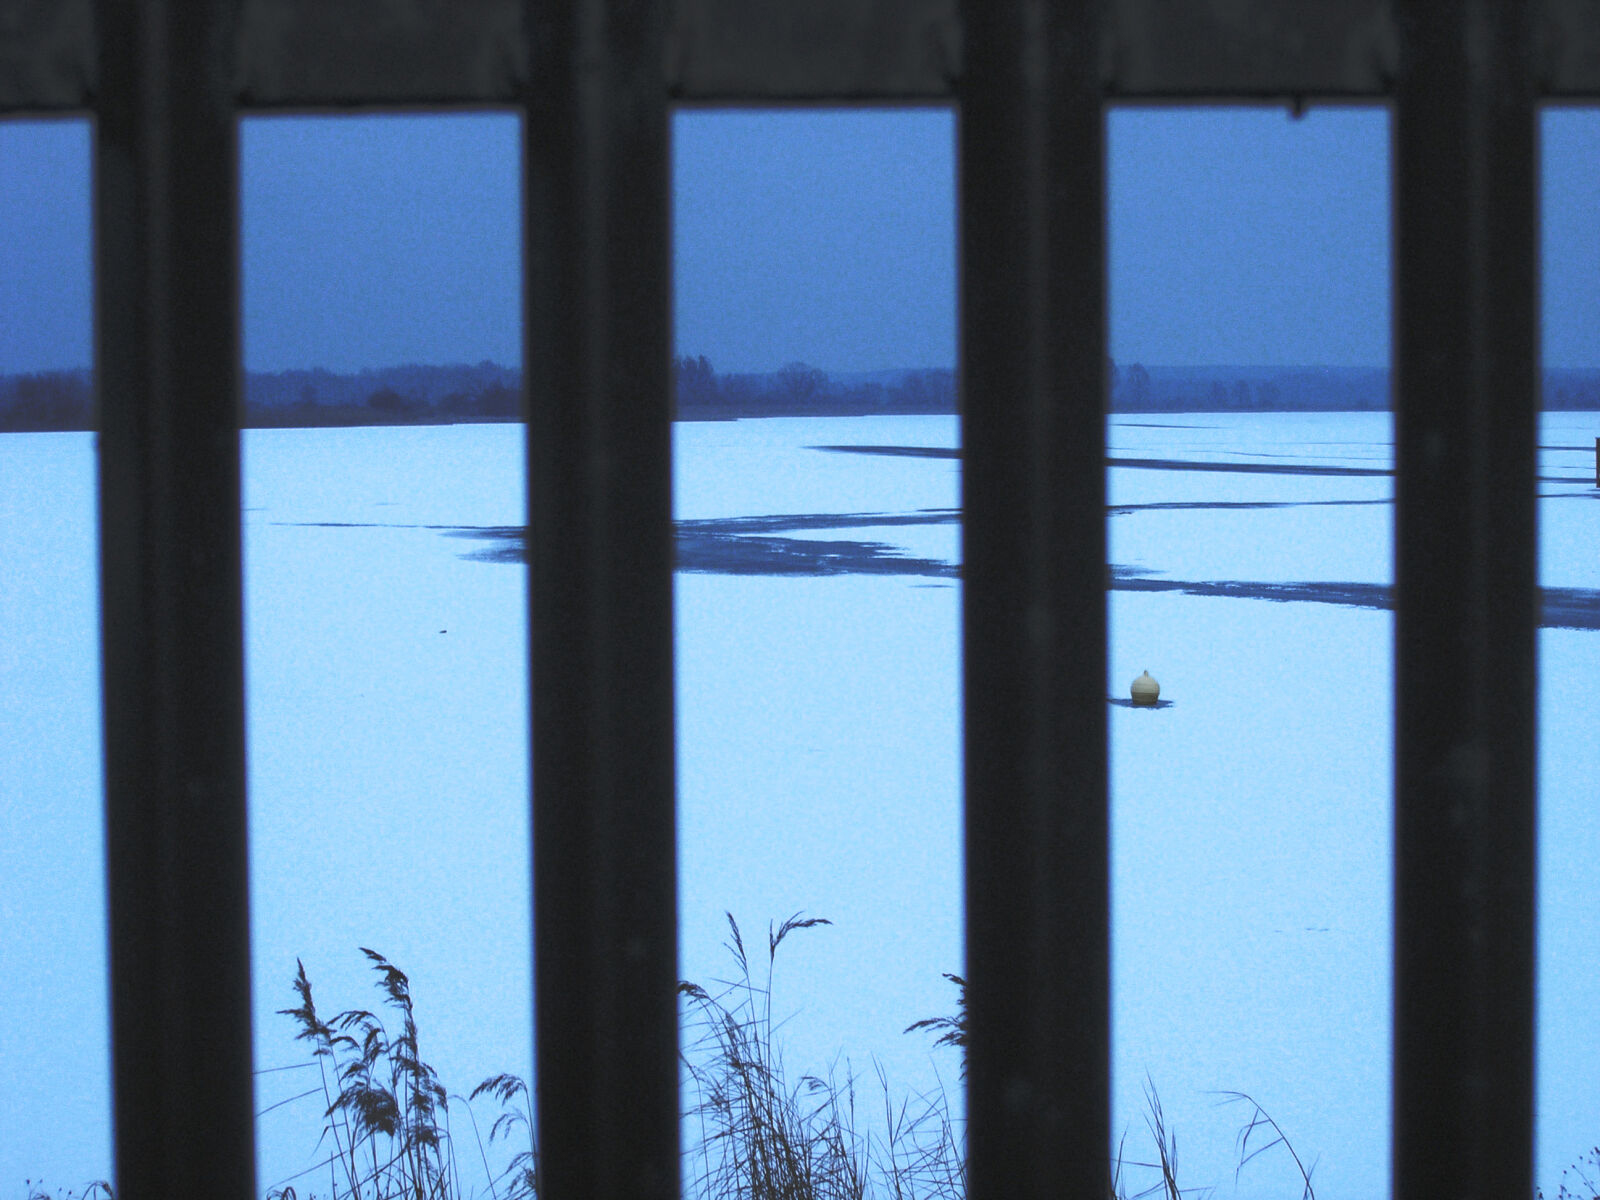 Olympus C5060WZ sample photo. Fence, frozen, lake, winter photography